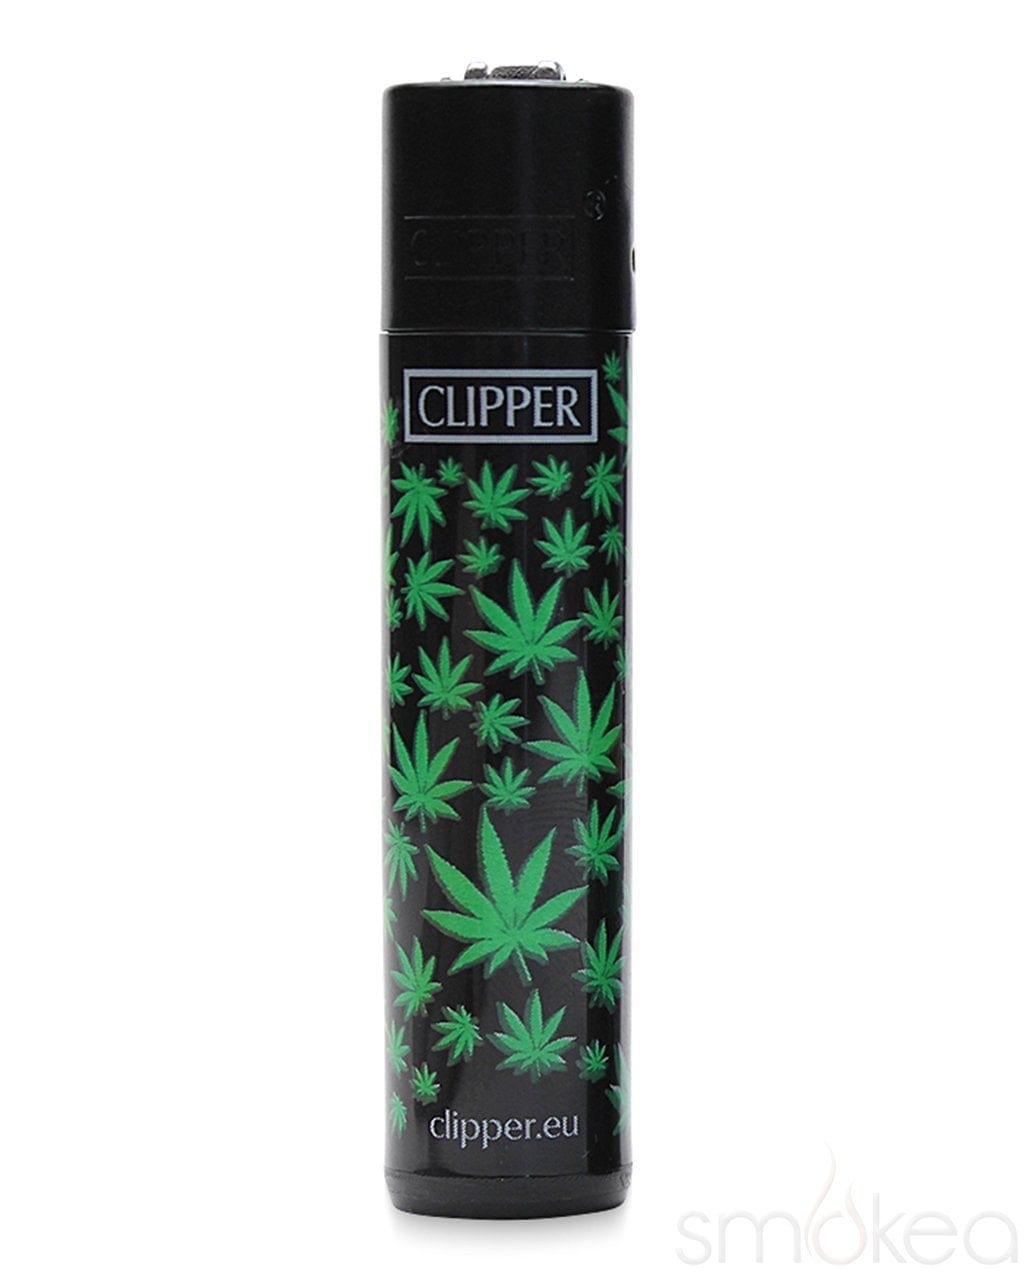 Lighter Cover Hemp Wick for Clipper Lighters Lighter Hemp 